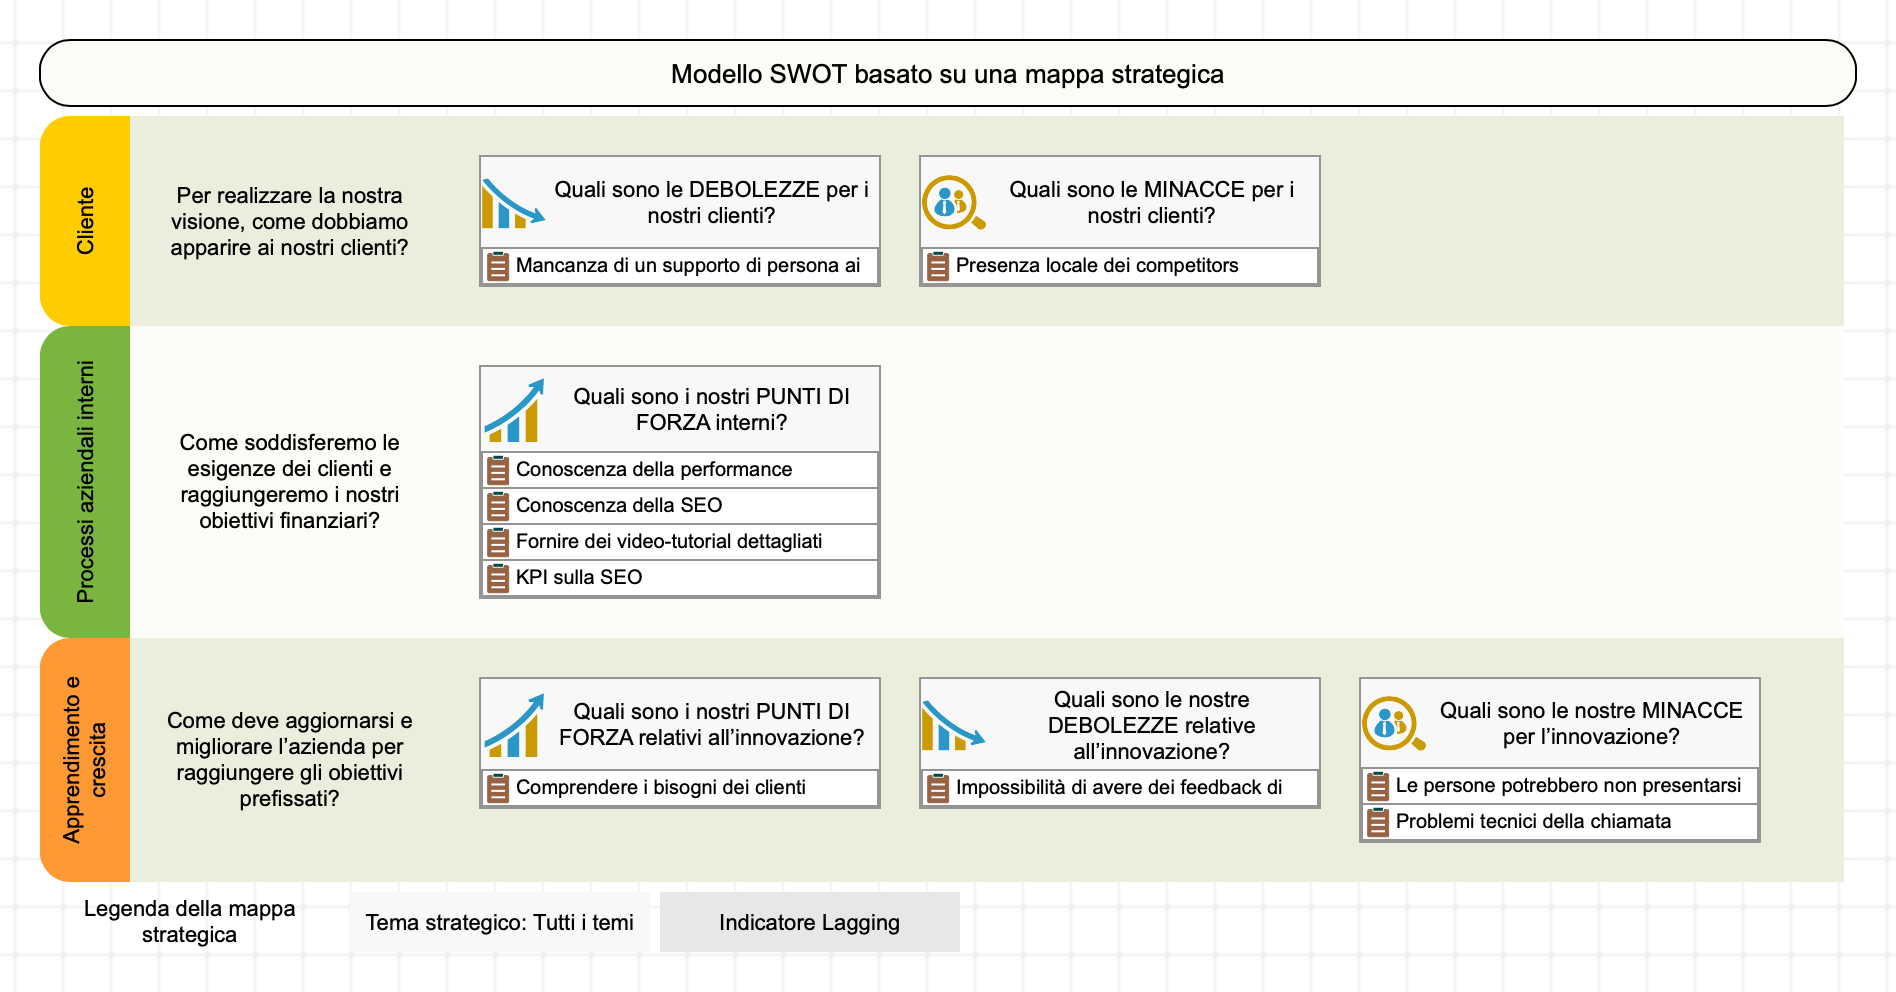 Utilizzo del modello SWOT+S per rappresentare i risultati nella prospettiva dell'innovazione 